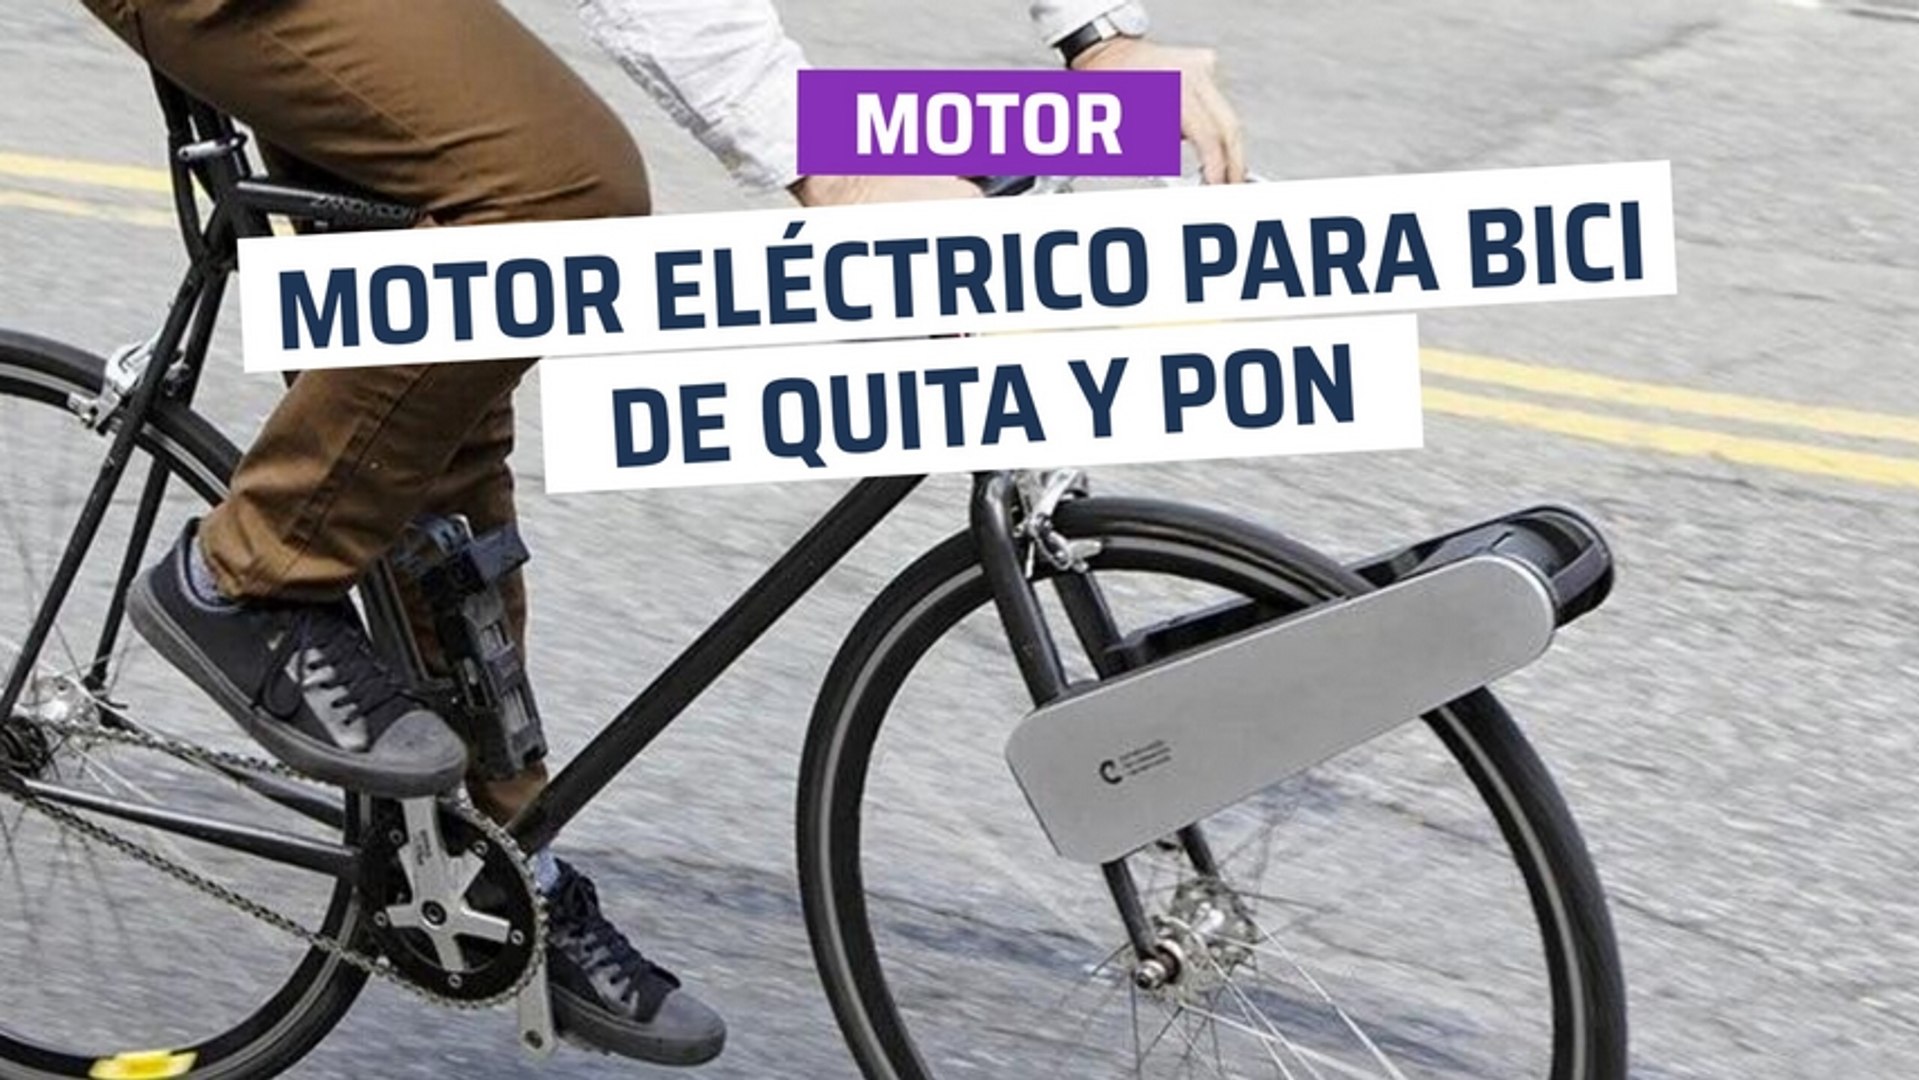 CH] Motor eléctrico para bici, de quita y pon - Vídeo Dailymotion